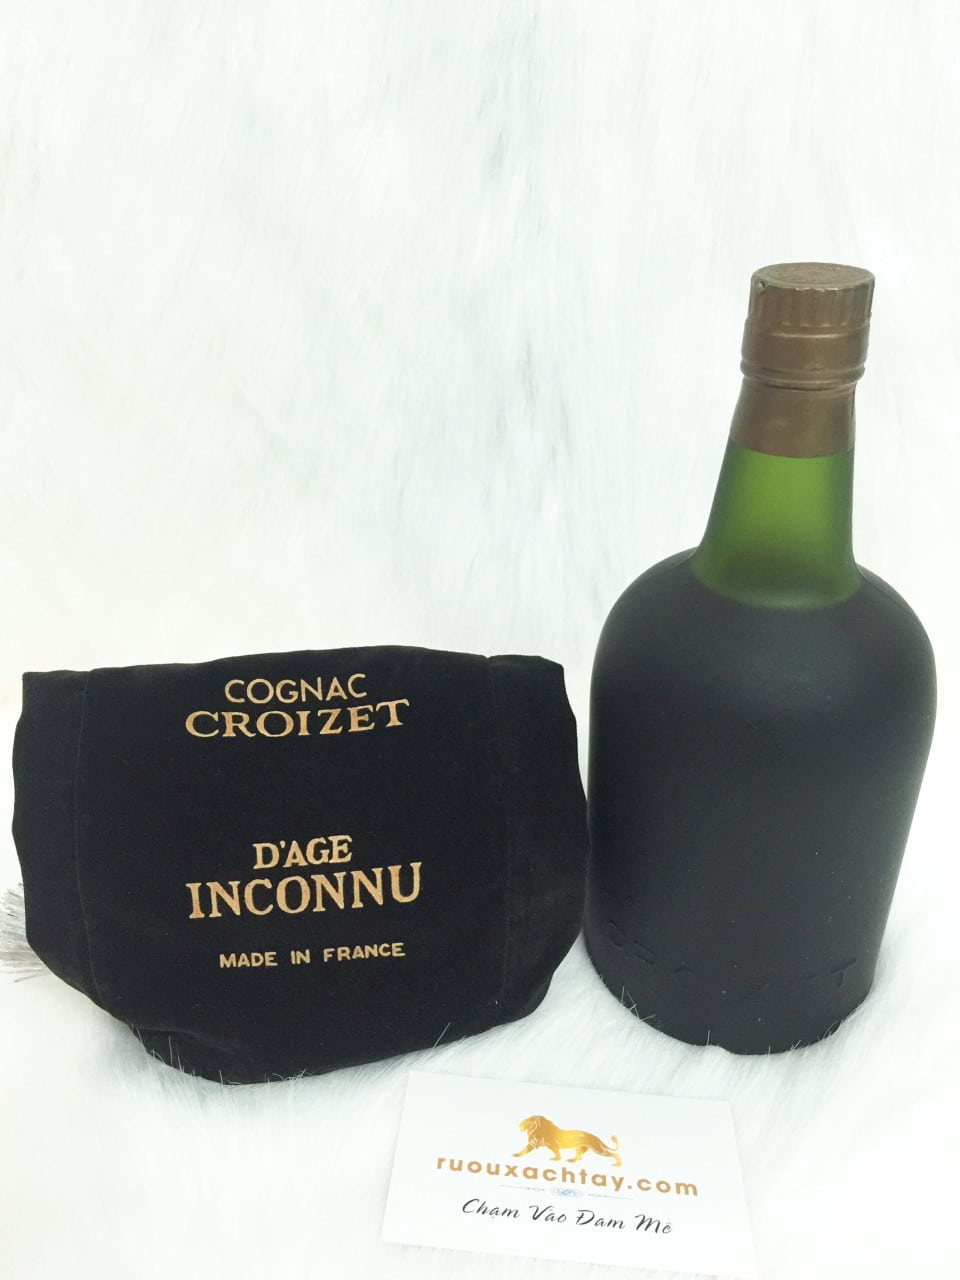 Croizet Cognac Age Inconnu